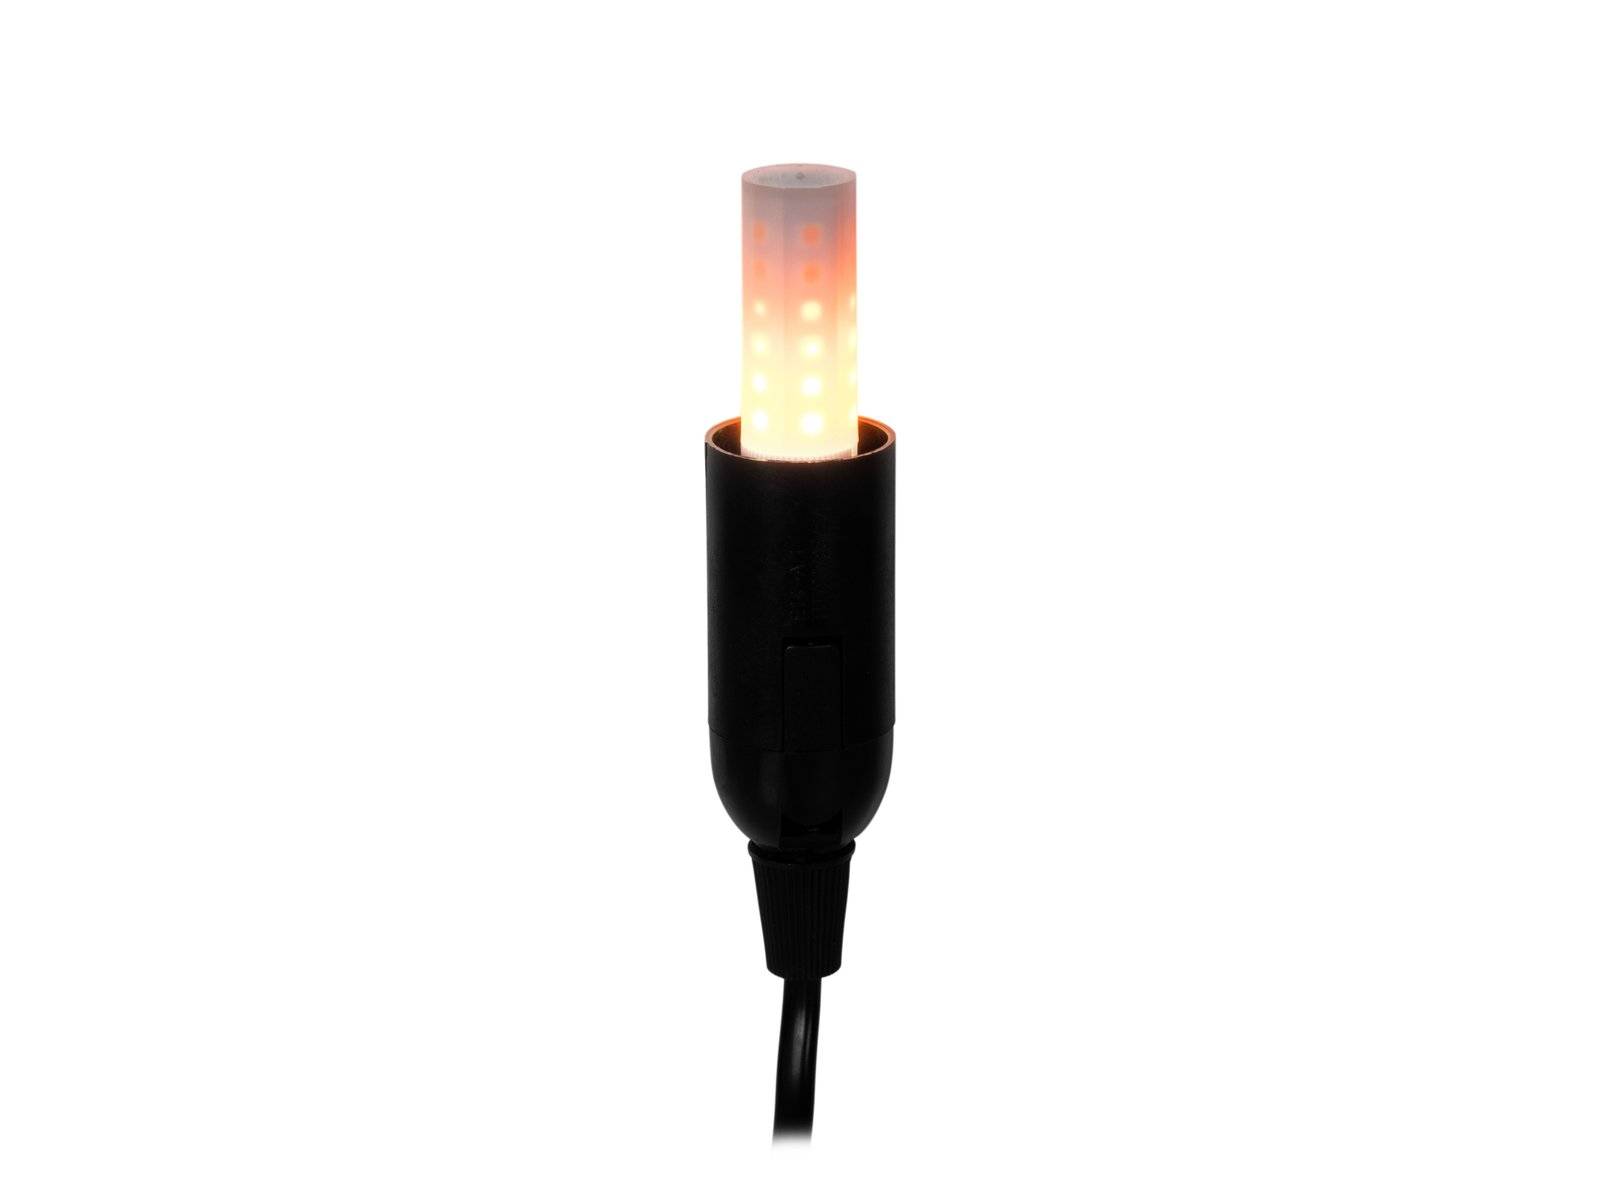 Ampoules LED feu flammes effet scintillement lampe E14 lampe 1600K